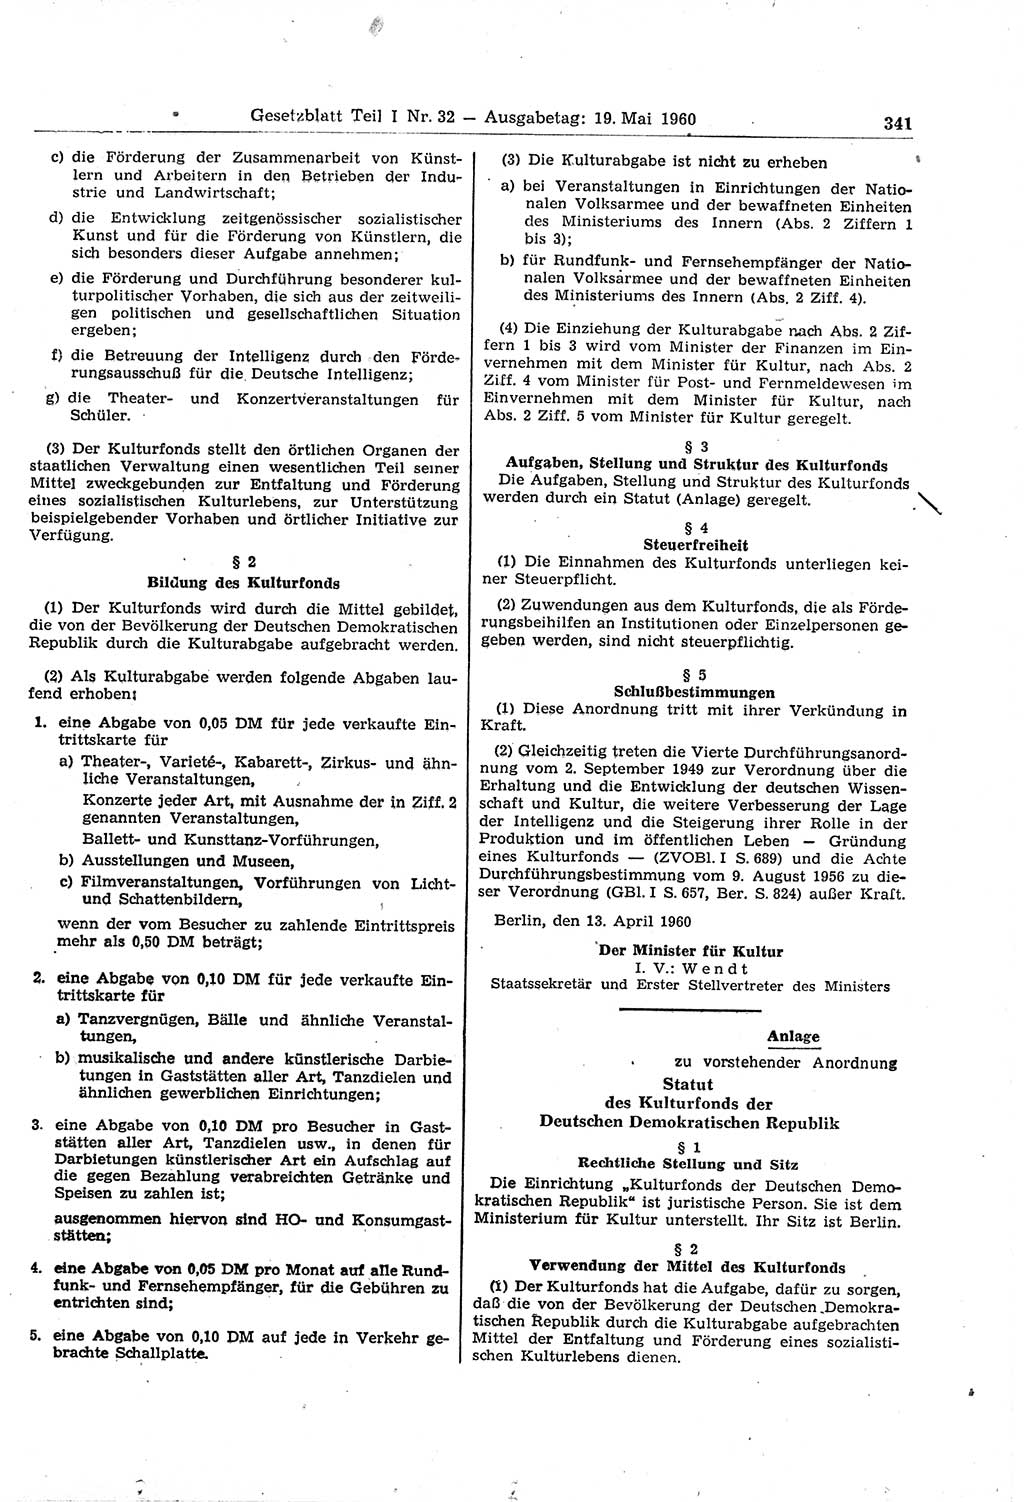 Gesetzblatt (GBl.) der Deutschen Demokratischen Republik (DDR) Teil Ⅰ 1960, Seite 341 (GBl. DDR Ⅰ 1960, S. 341)